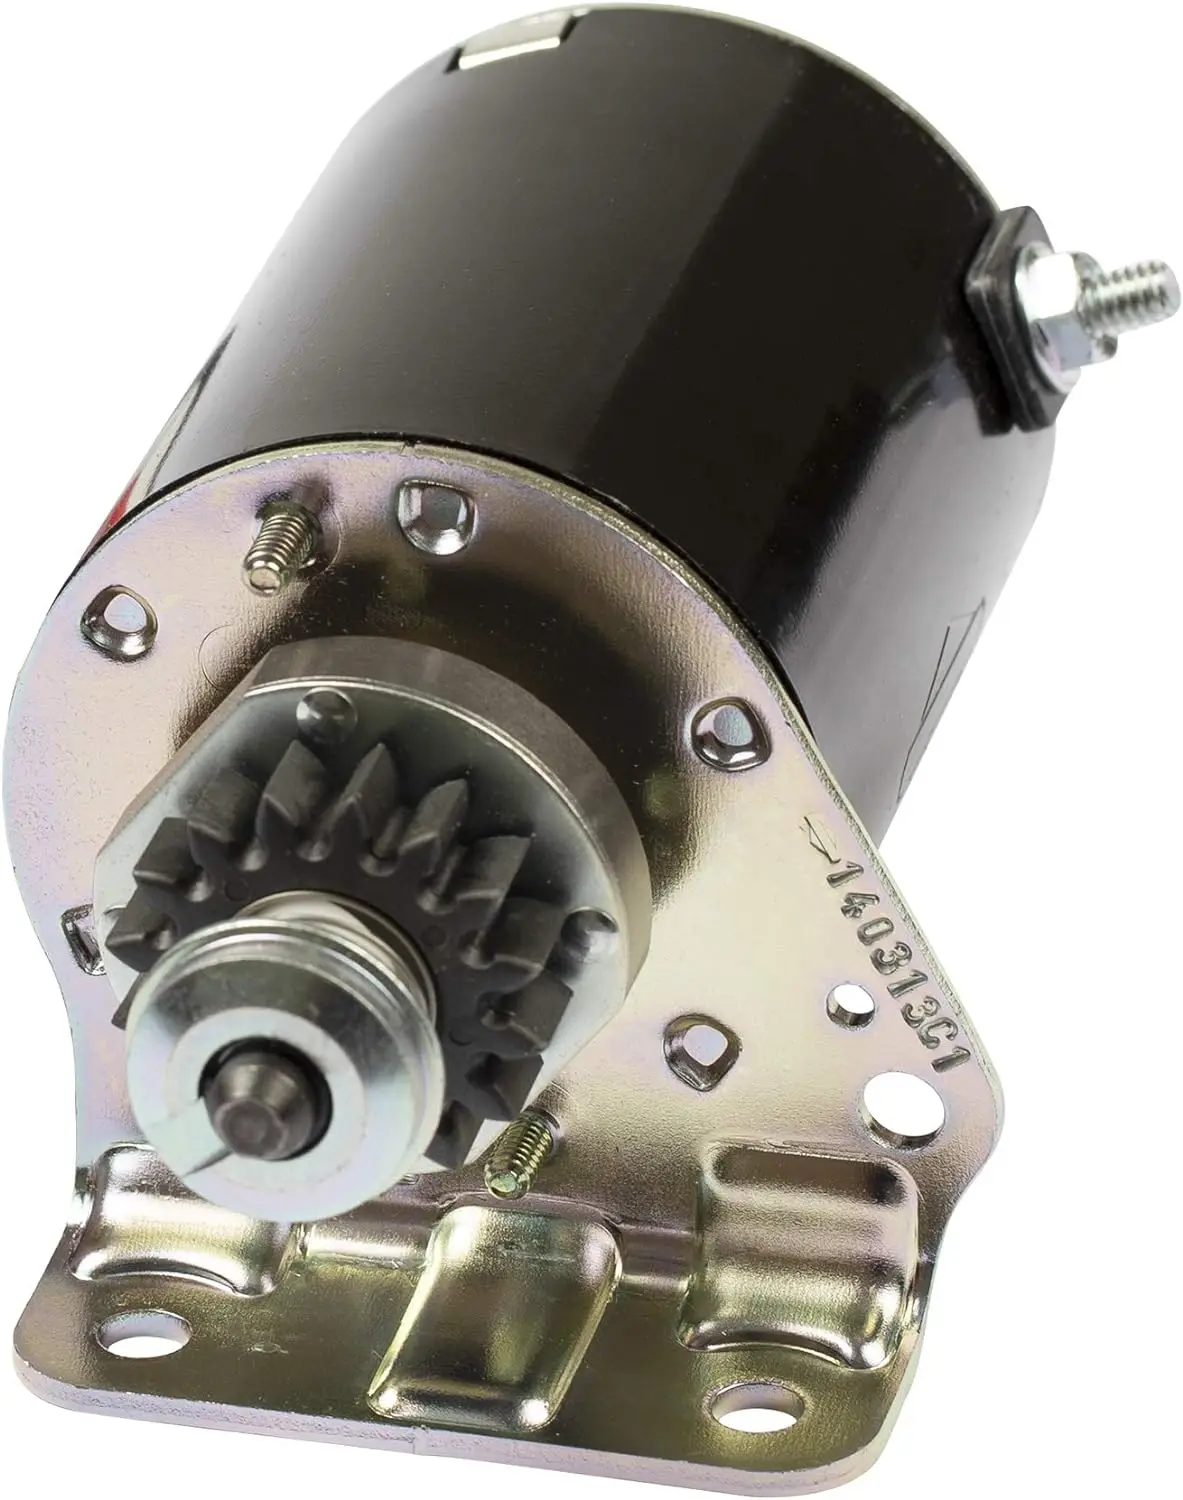 

& Stratton 497595 Starter Motor Replaces 5406 H, 394805, 392749 Kit xeon F rod bearing